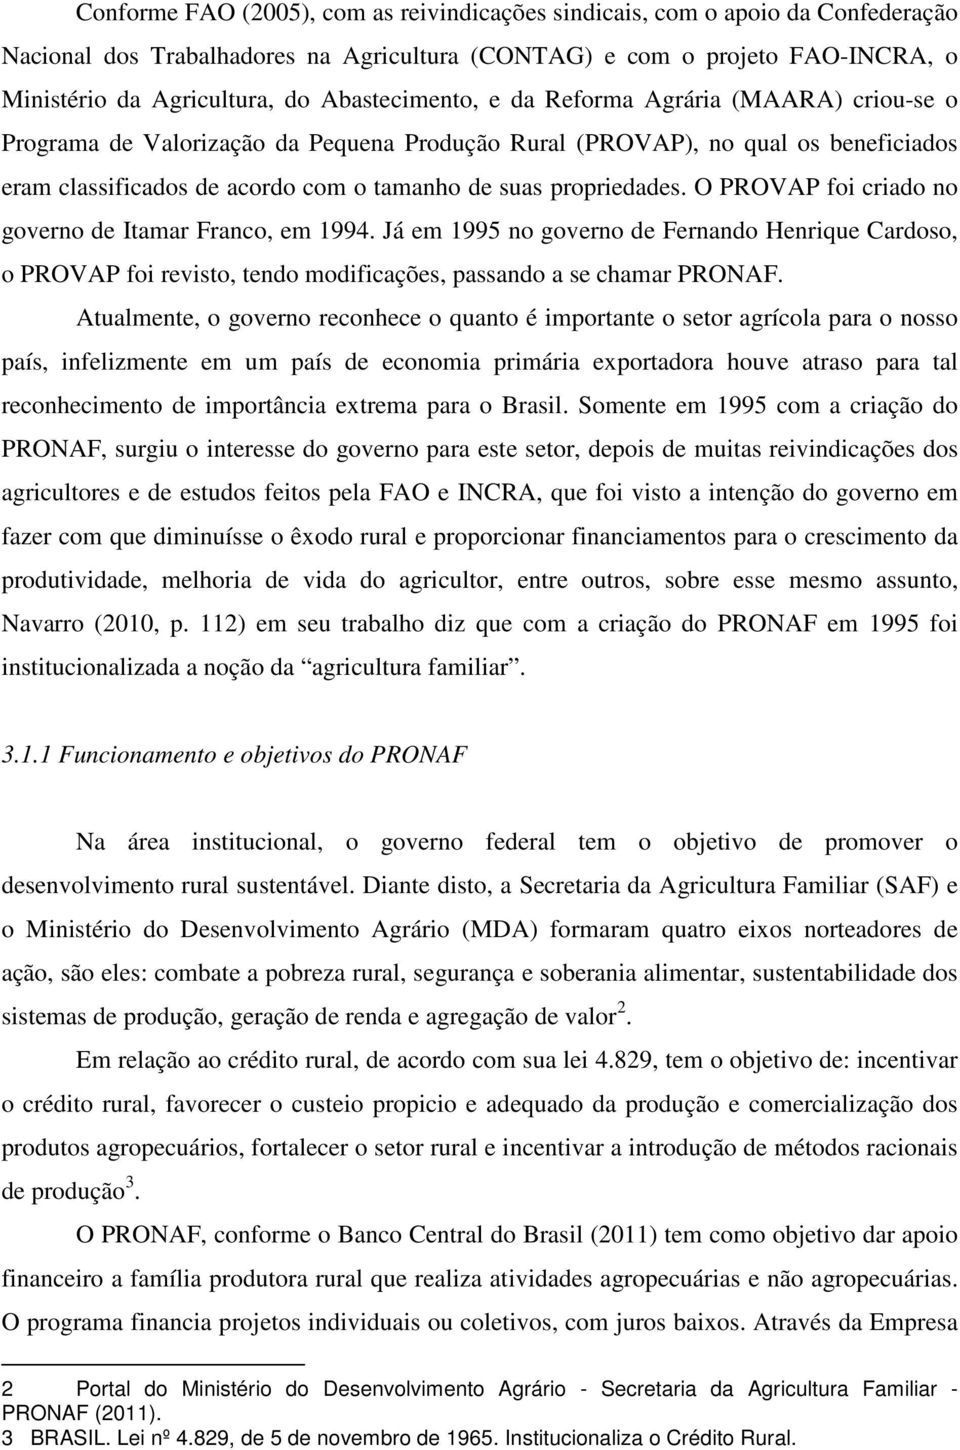 propriedades. O PROVAP foi criado no governo de Itamar Franco, em 1994. Já em 1995 no governo de Fernando Henrique Cardoso, o PROVAP foi revisto, tendo modificações, passando a se chamar PRONAF.